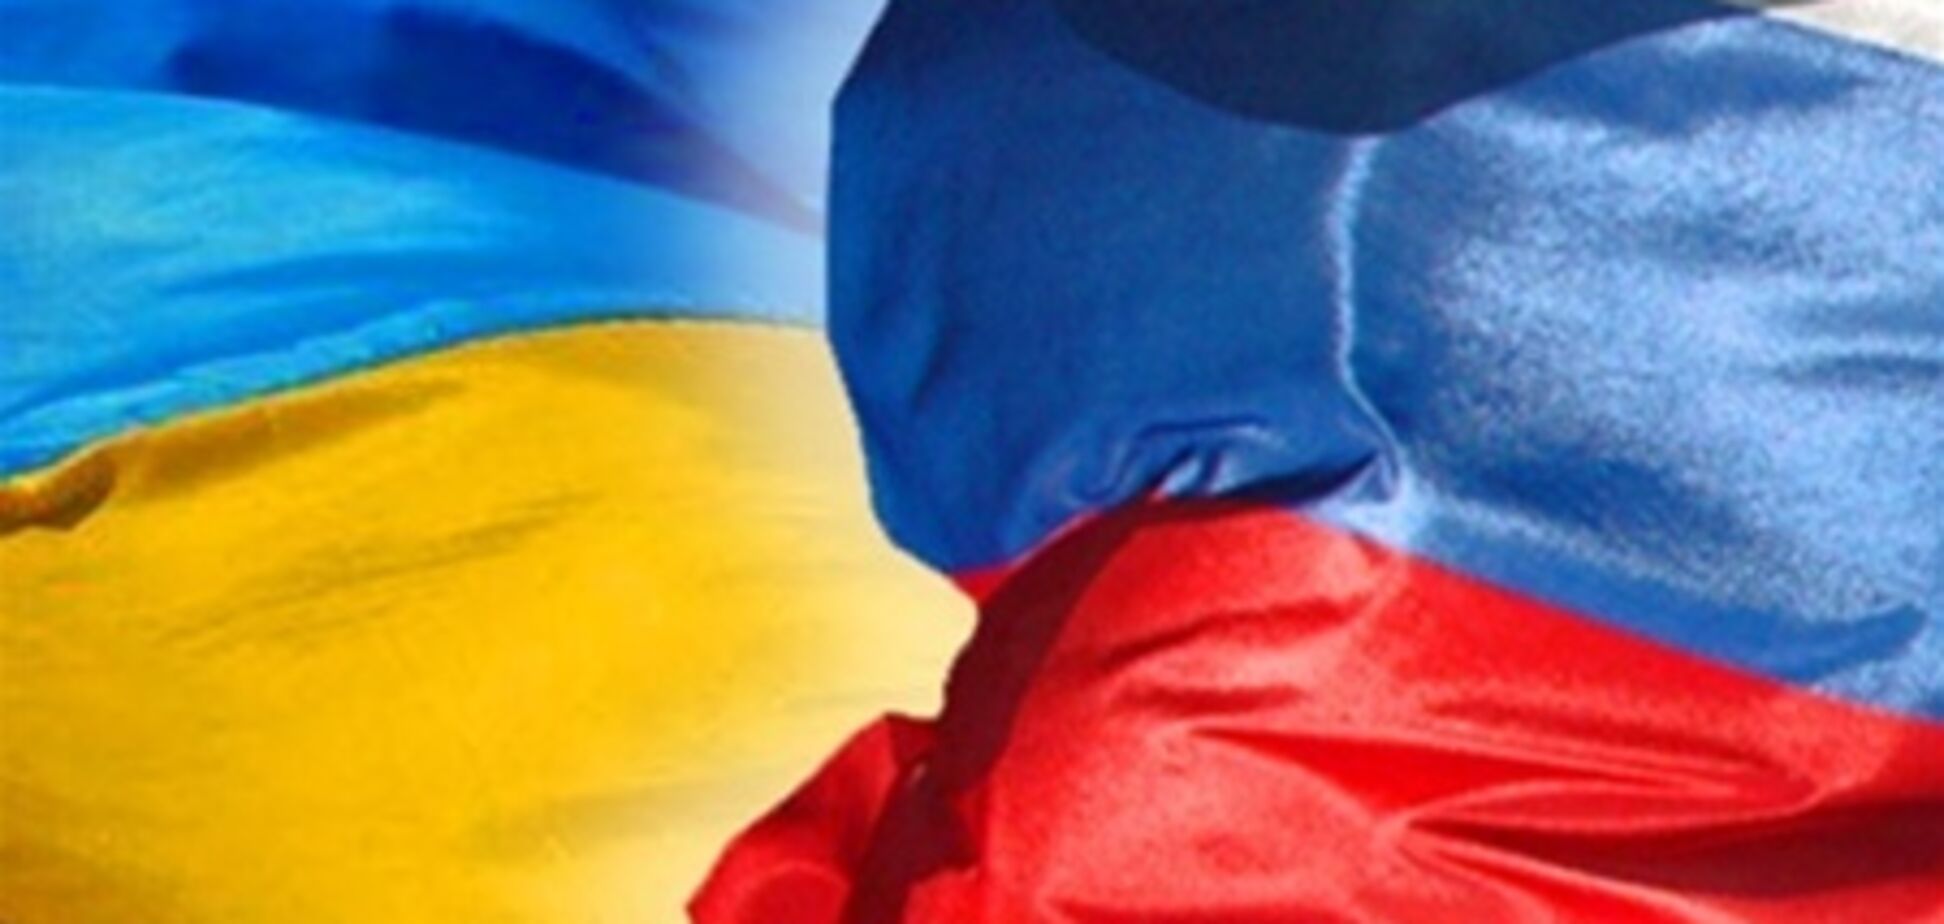 Украинцы лучше относятся к России, чем россияне к Украине